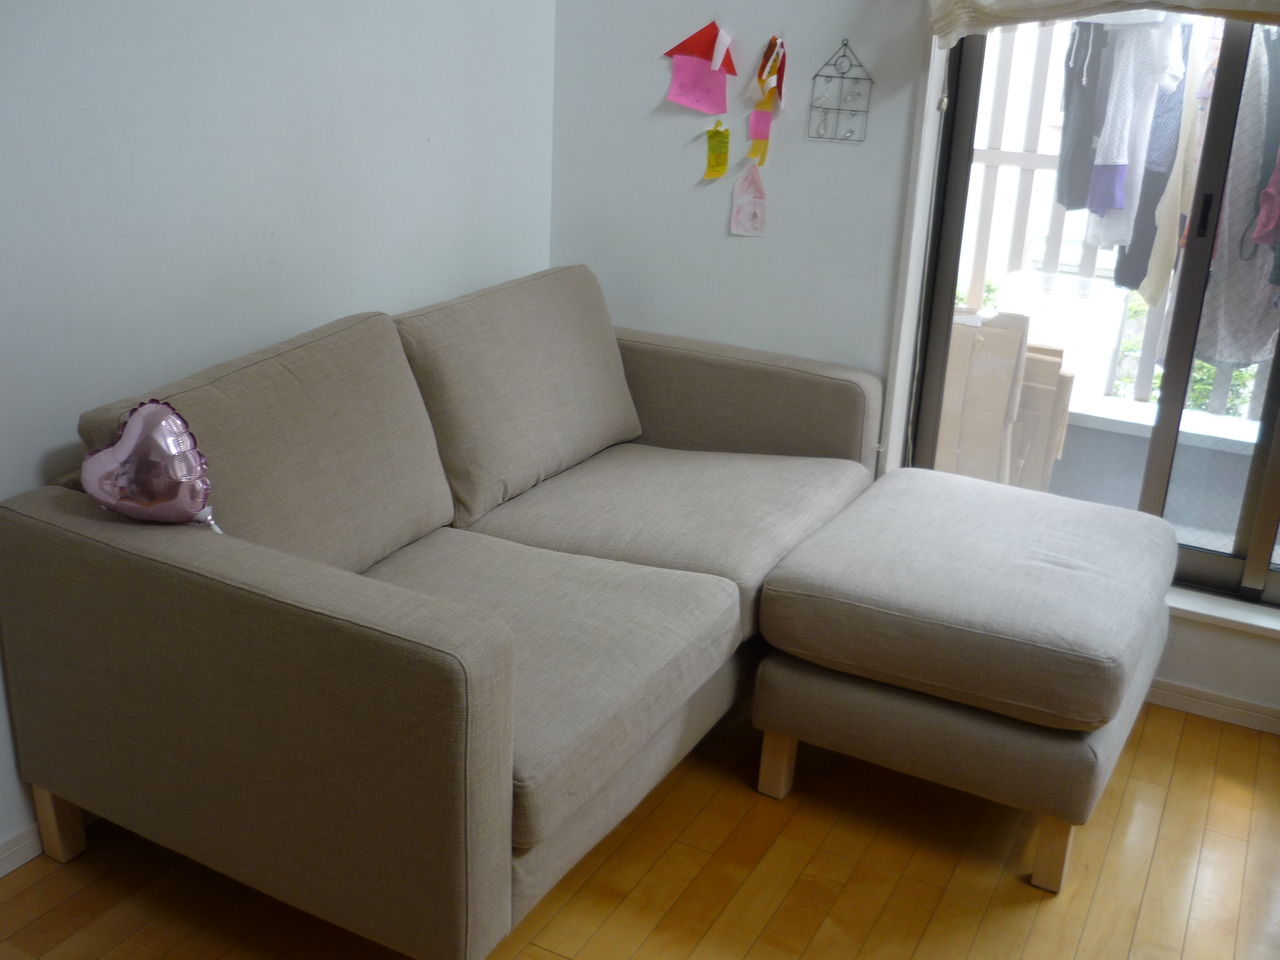 IKEAのソファー買ったどーーー : スッキリ心地よい暮らしをめざして